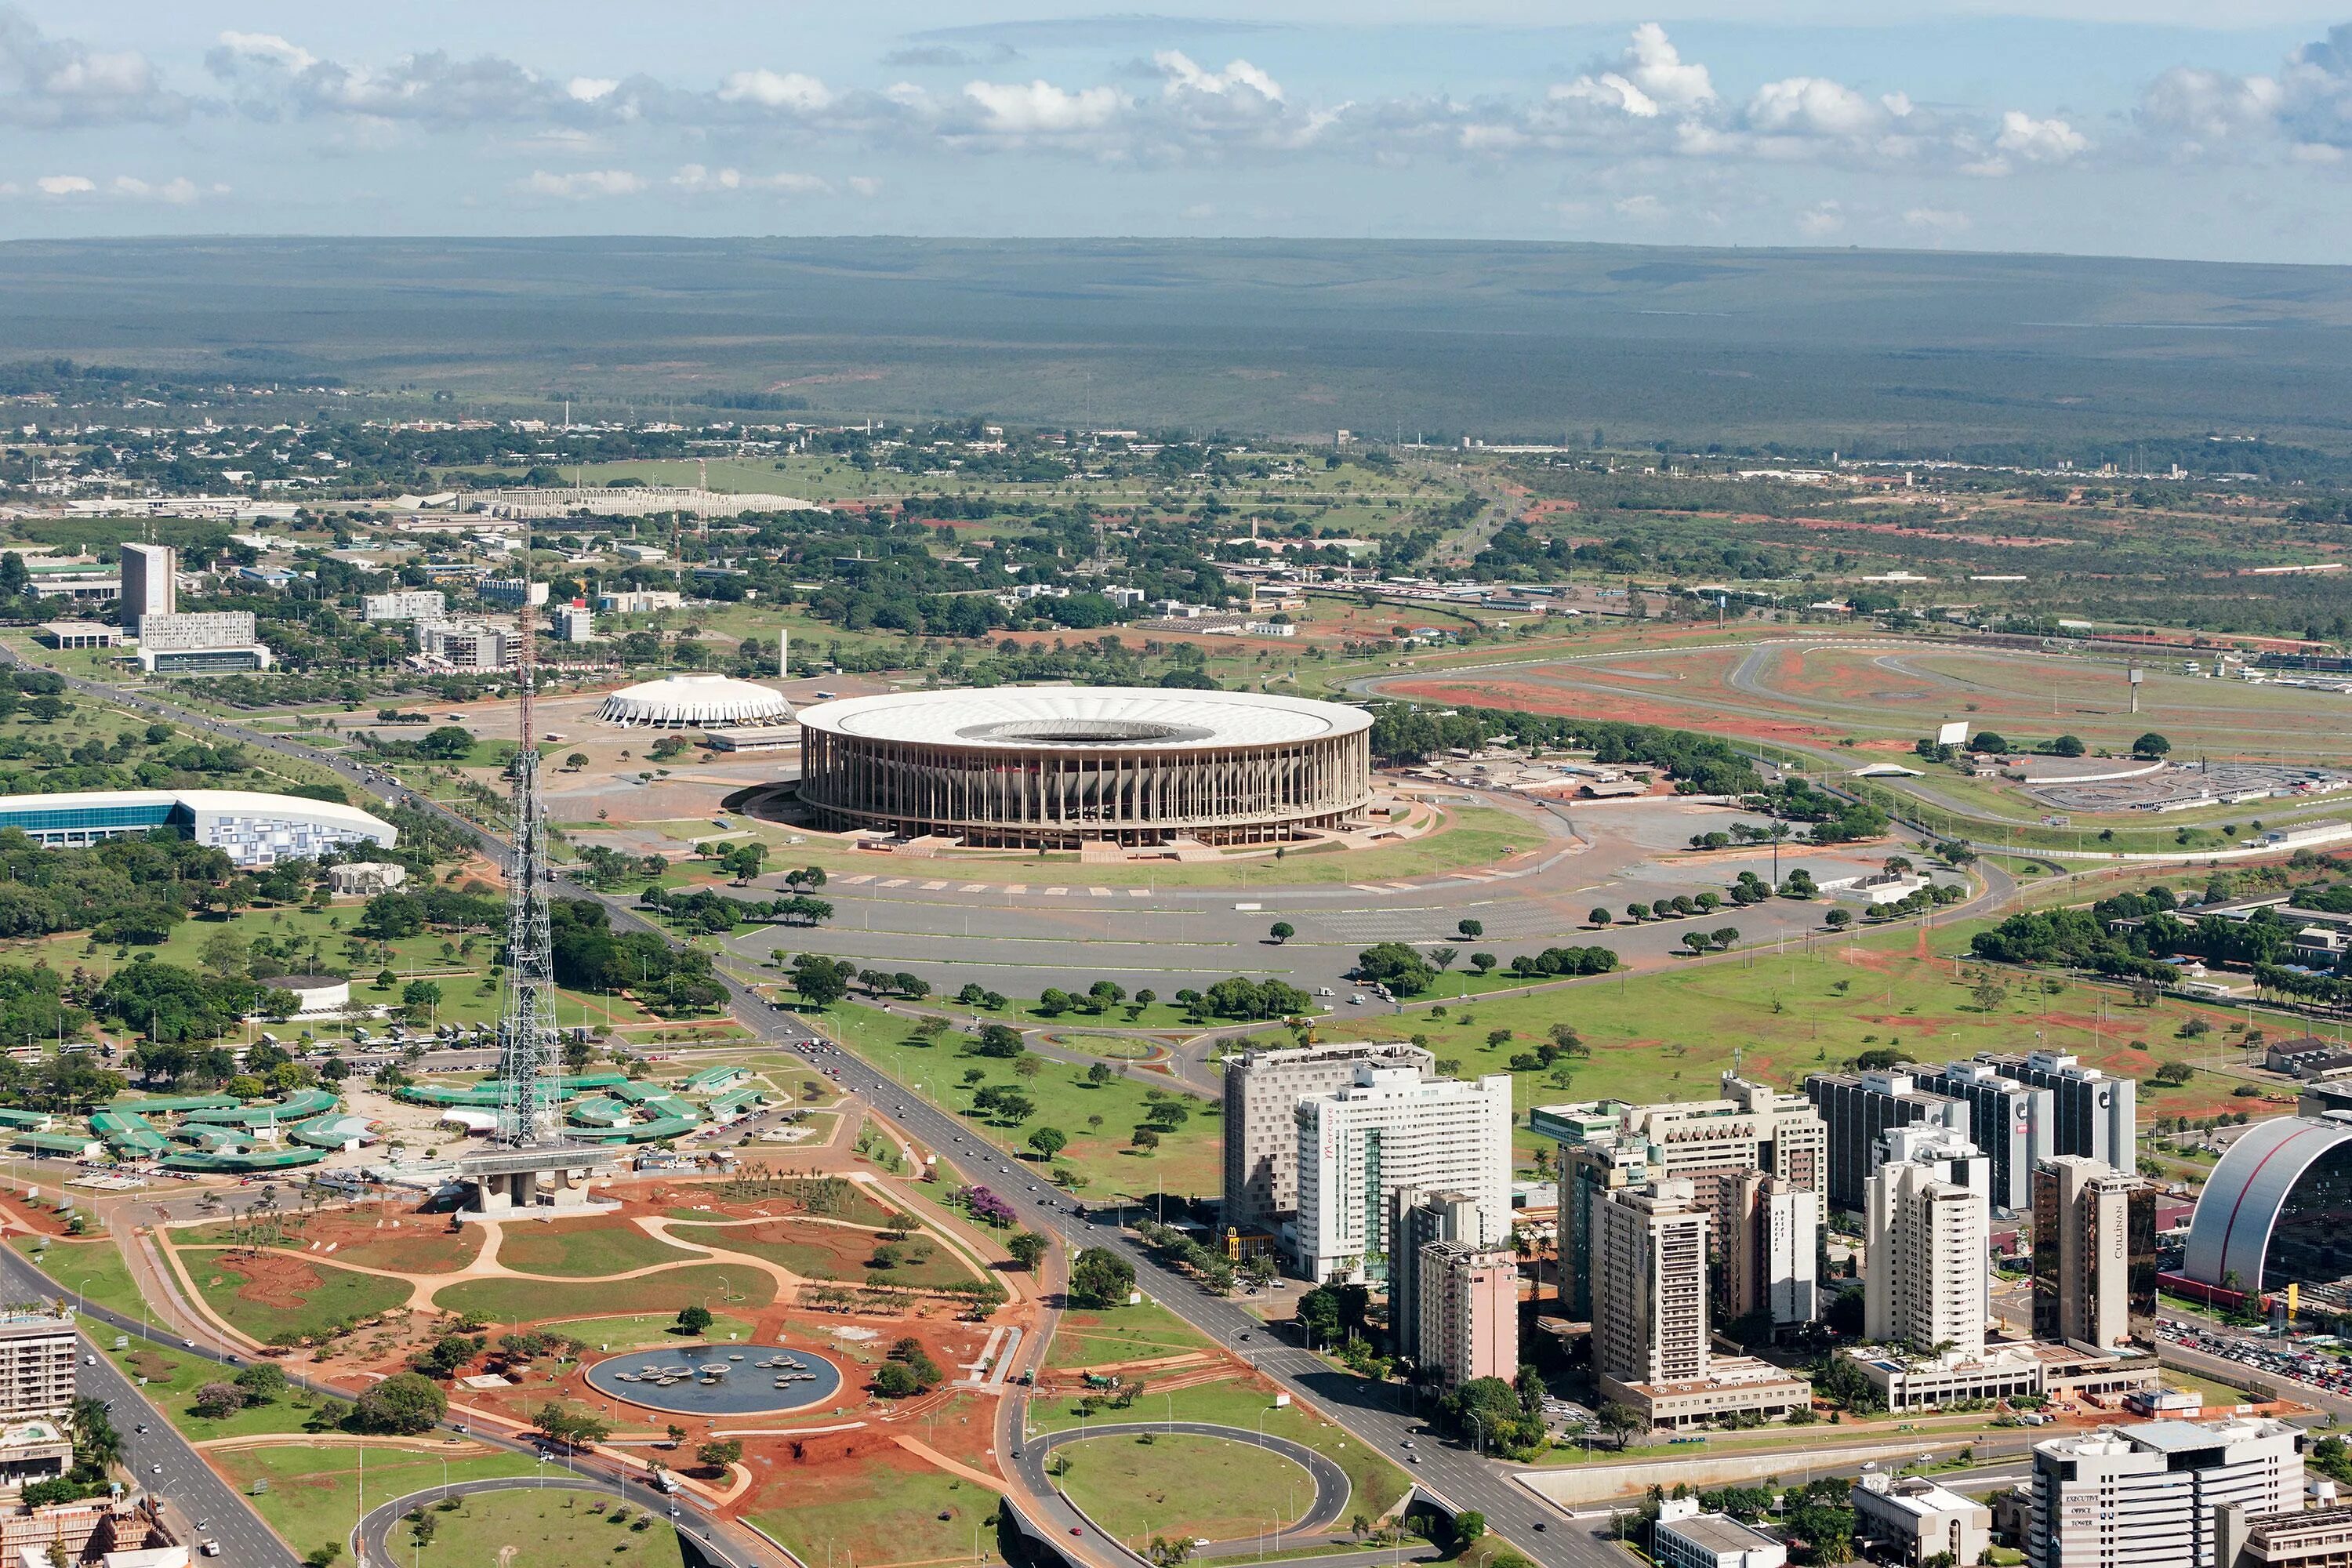 Столица Бразилиа столица Бразилии. Национальный стадион Бразилии. Бразилия город Бразилиа. Муниципалитеты федерального округа Бразилиа. Бразилия столица площадь